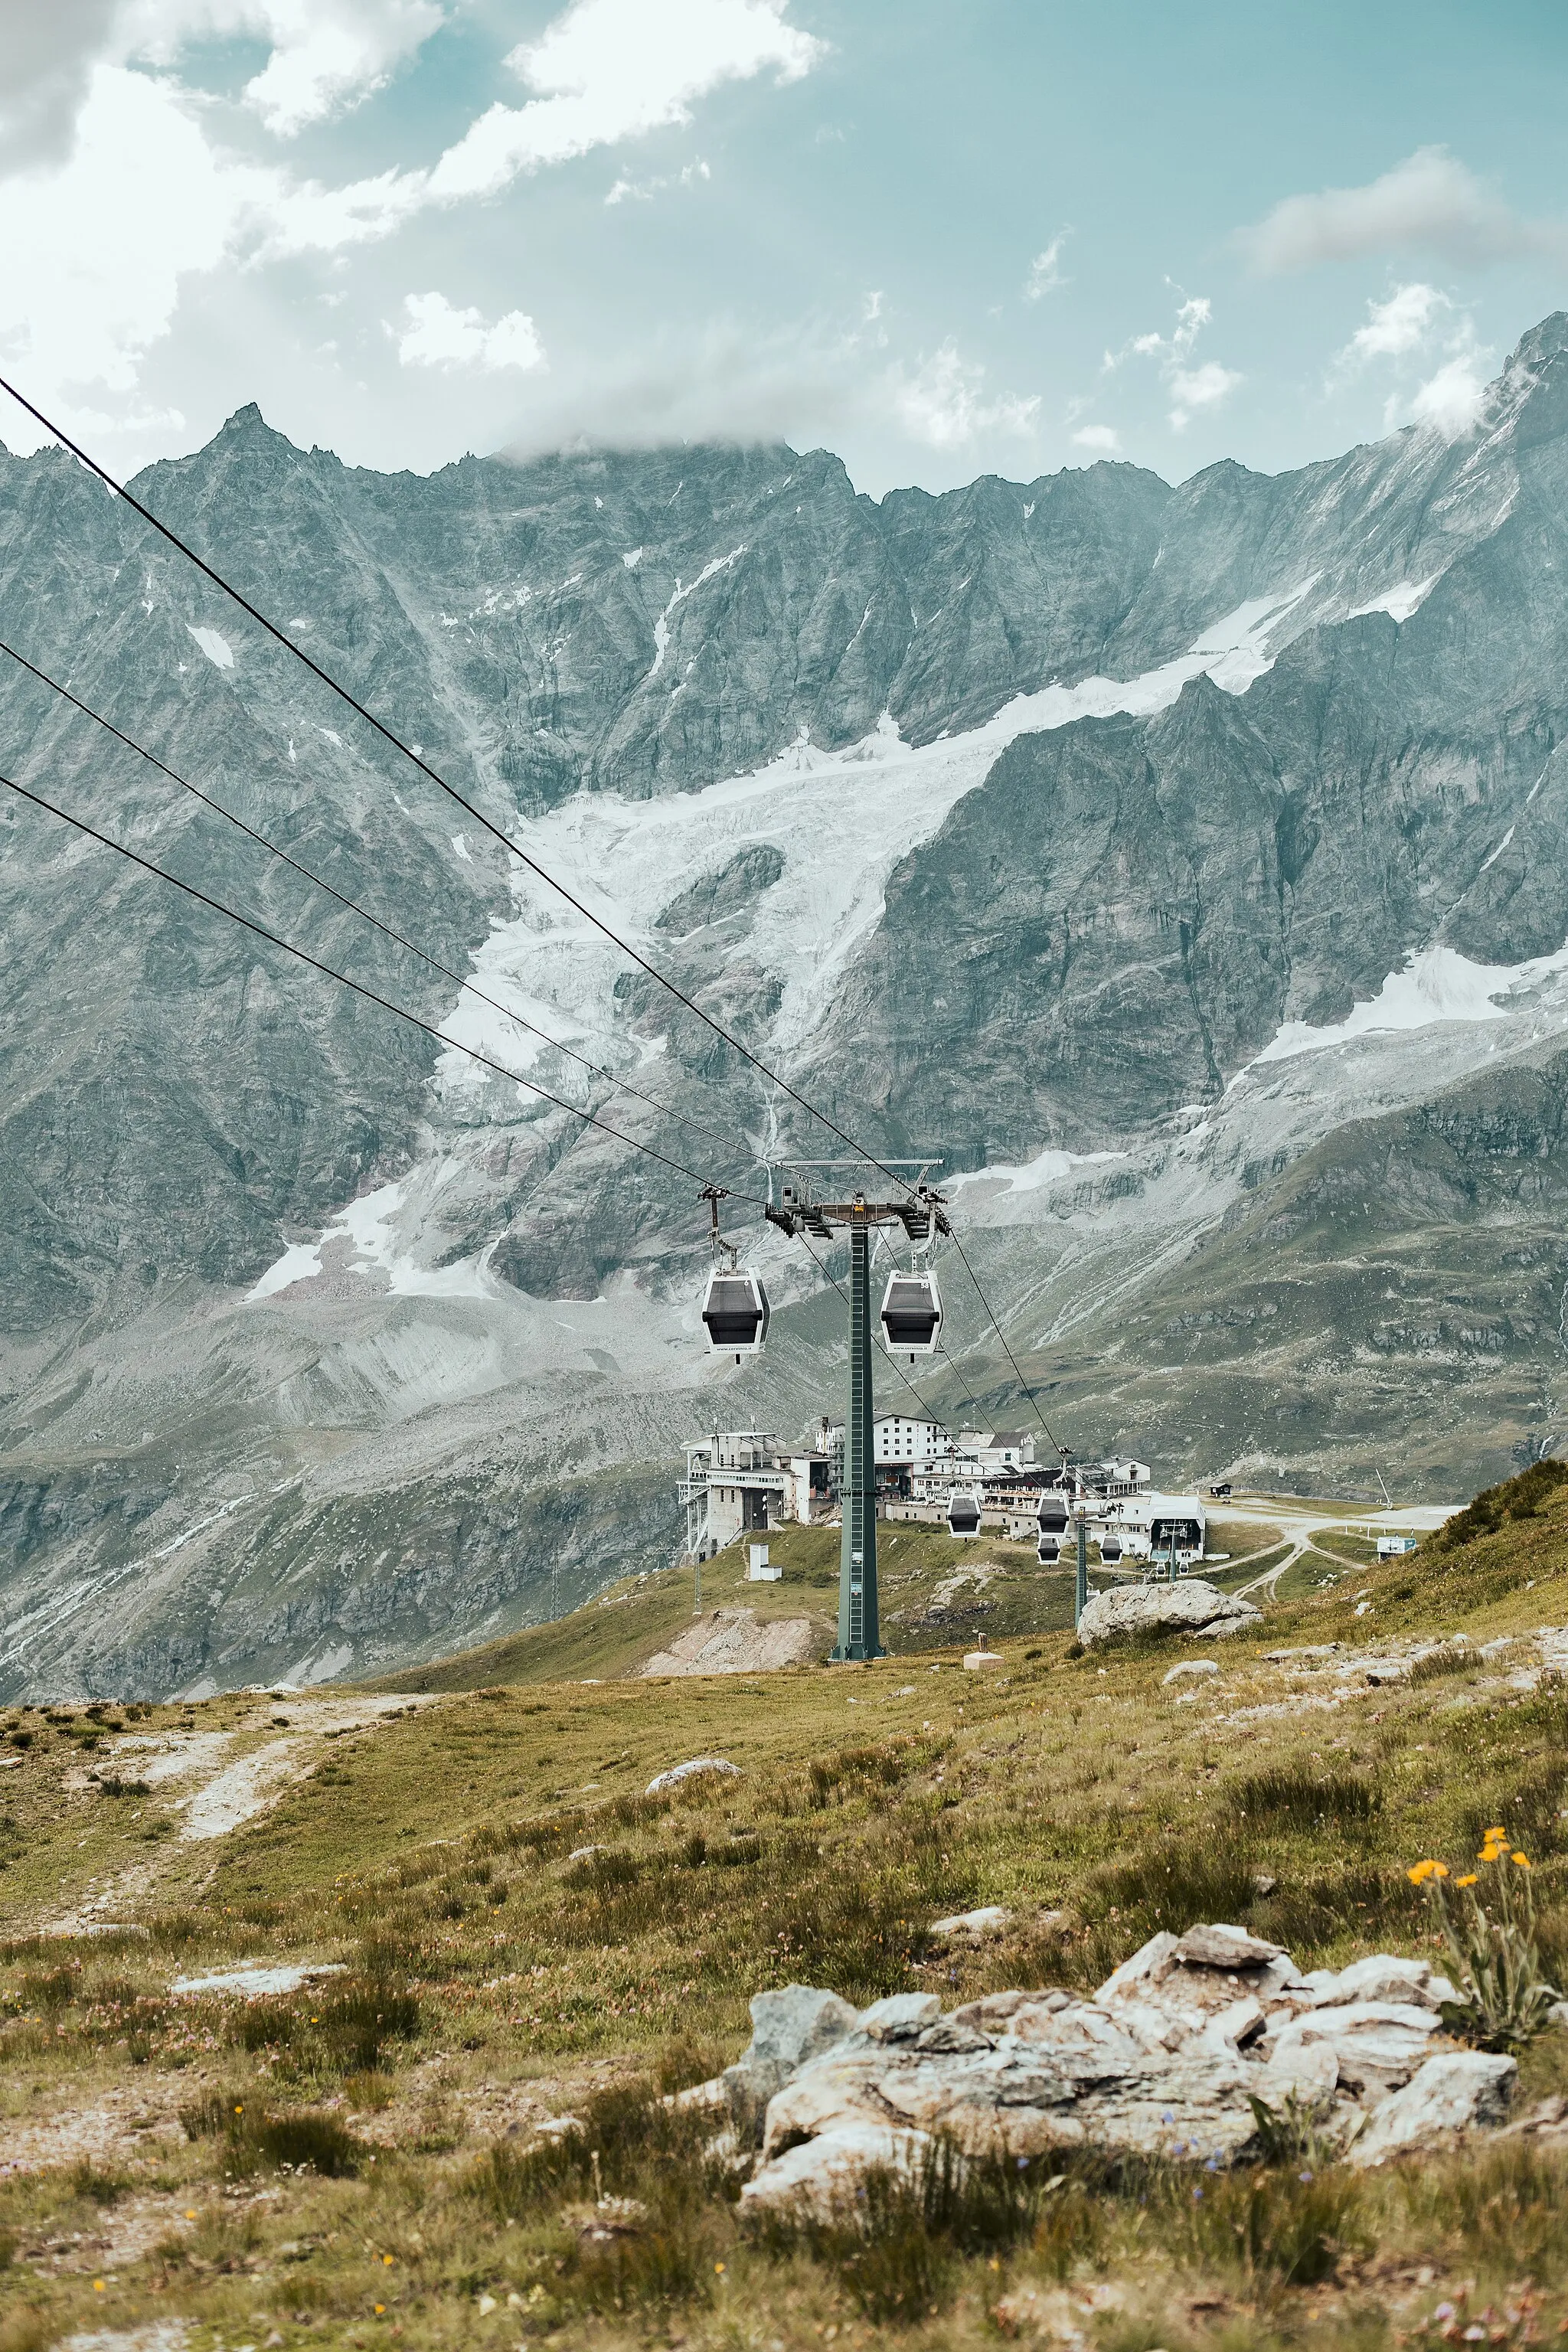 Bild von Aostatal/Aostatal